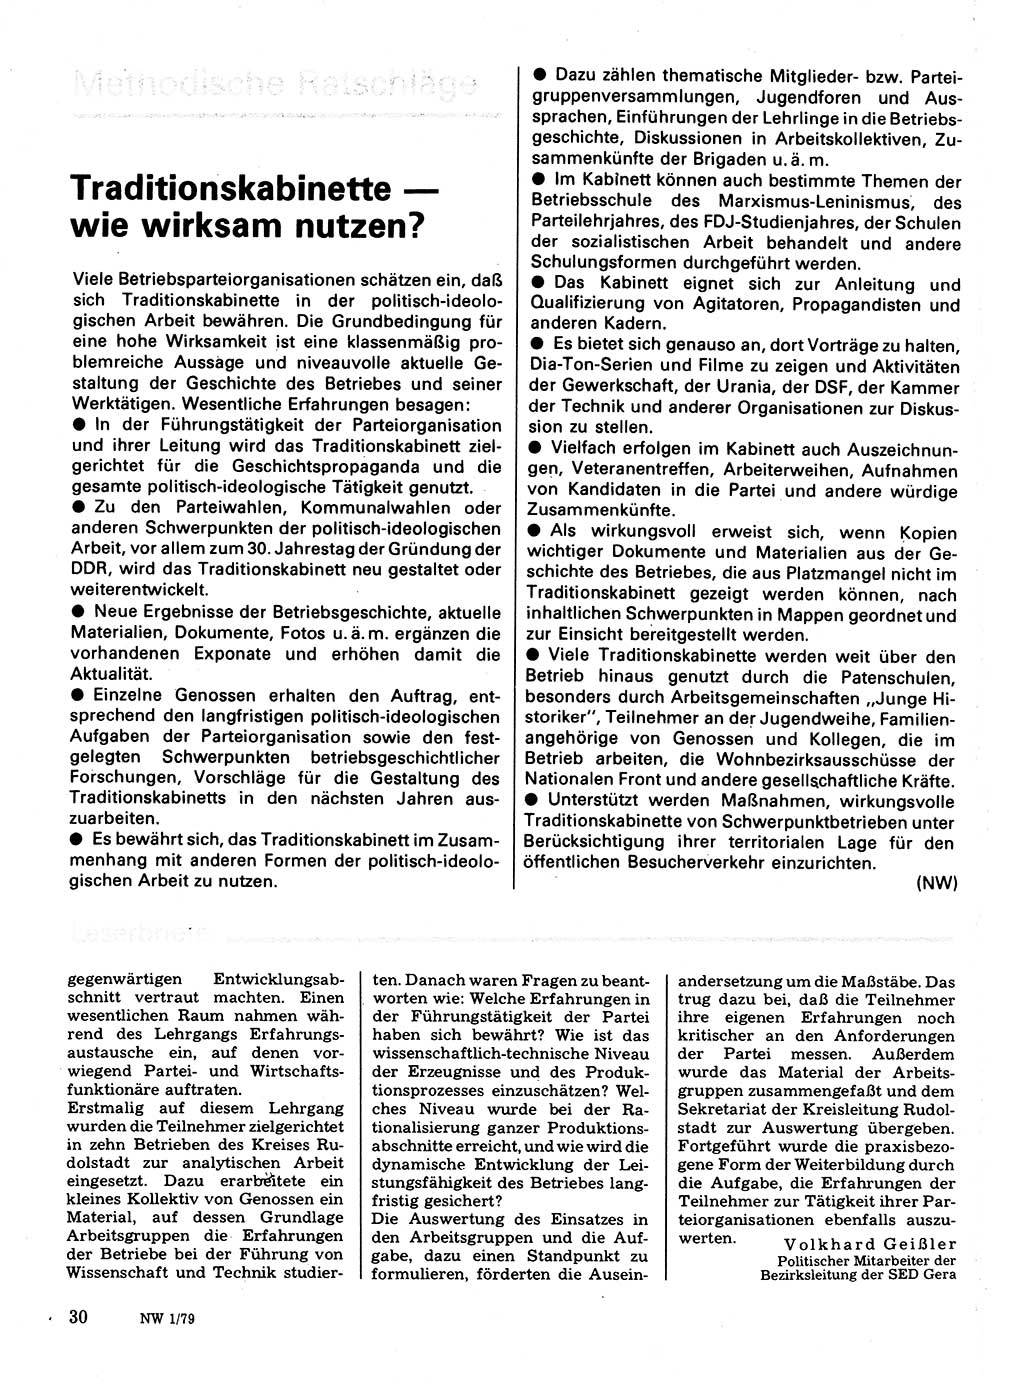 Neuer Weg (NW), Organ des Zentralkomitees (ZK) der SED (Sozialistische Einheitspartei Deutschlands) für Fragen des Parteilebens, 34. Jahrgang [Deutsche Demokratische Republik (DDR)] 1979, Seite 30 (NW ZK SED DDR 1979, S. 30)